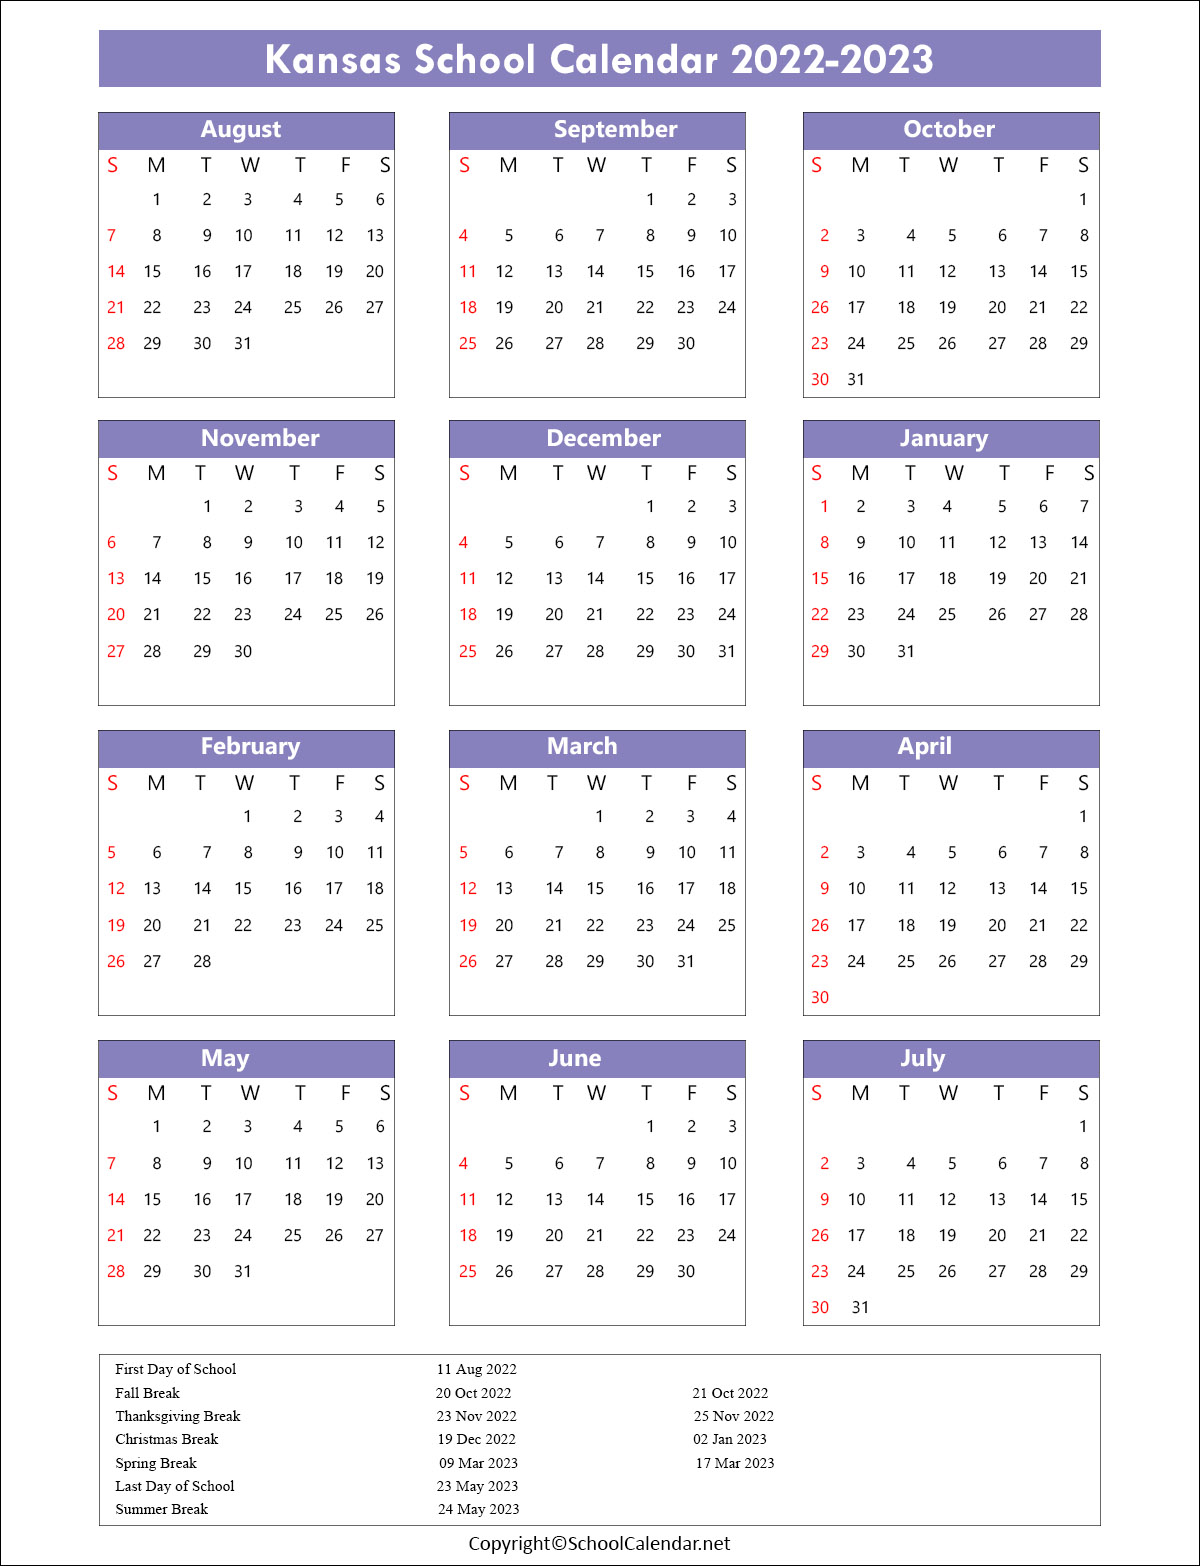 Kansas School Calendar 2022